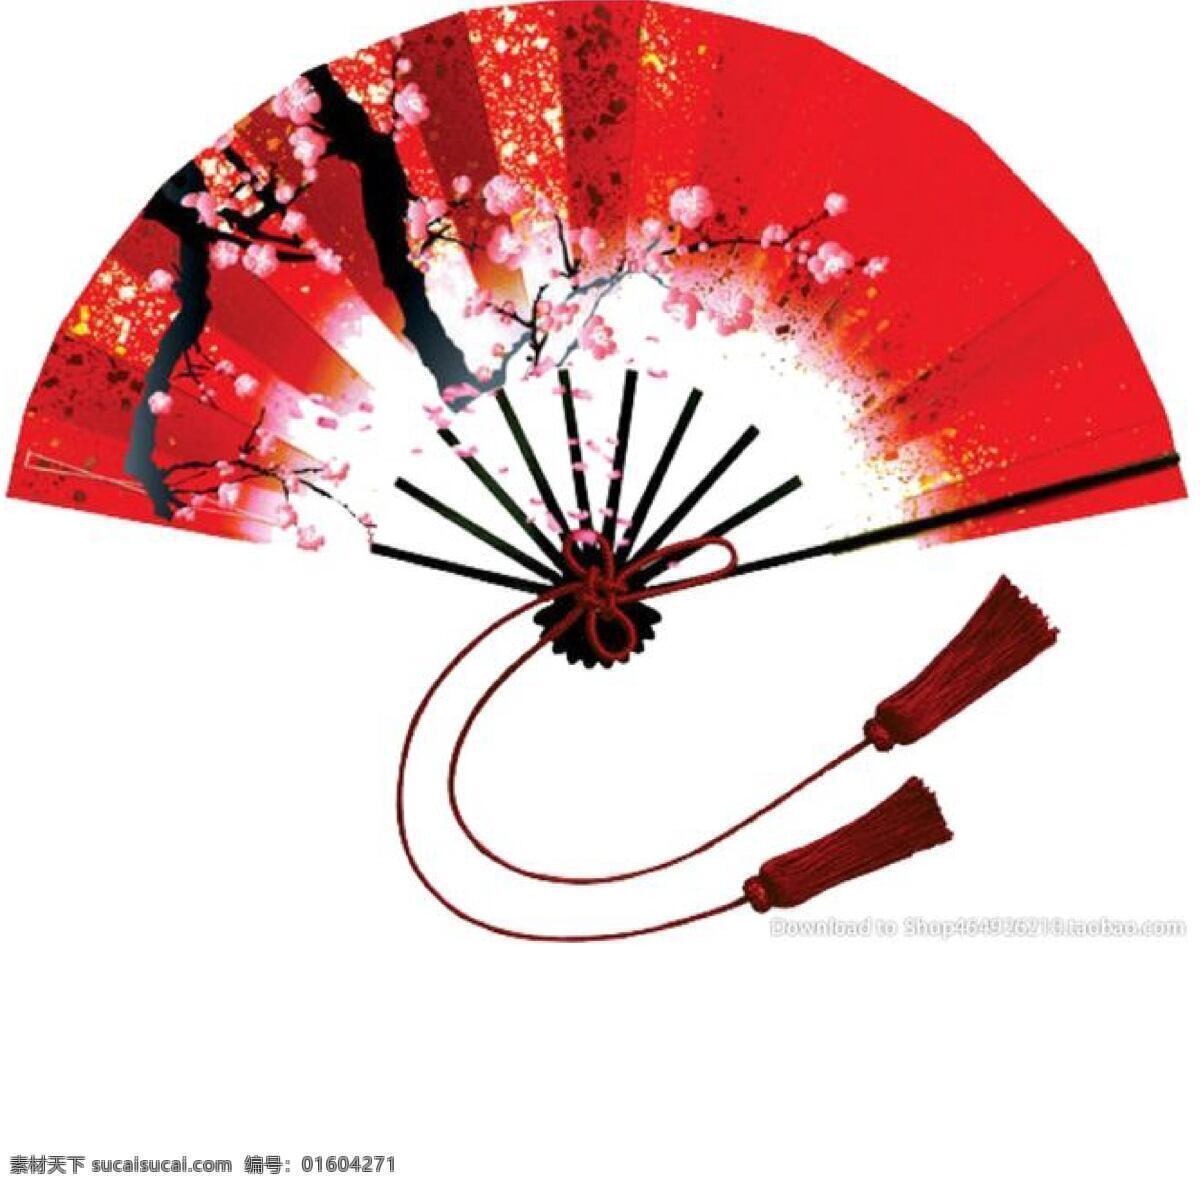 红色扇子 红色 扇子 吉祥 祝福 春节 文化艺术 节日庆祝